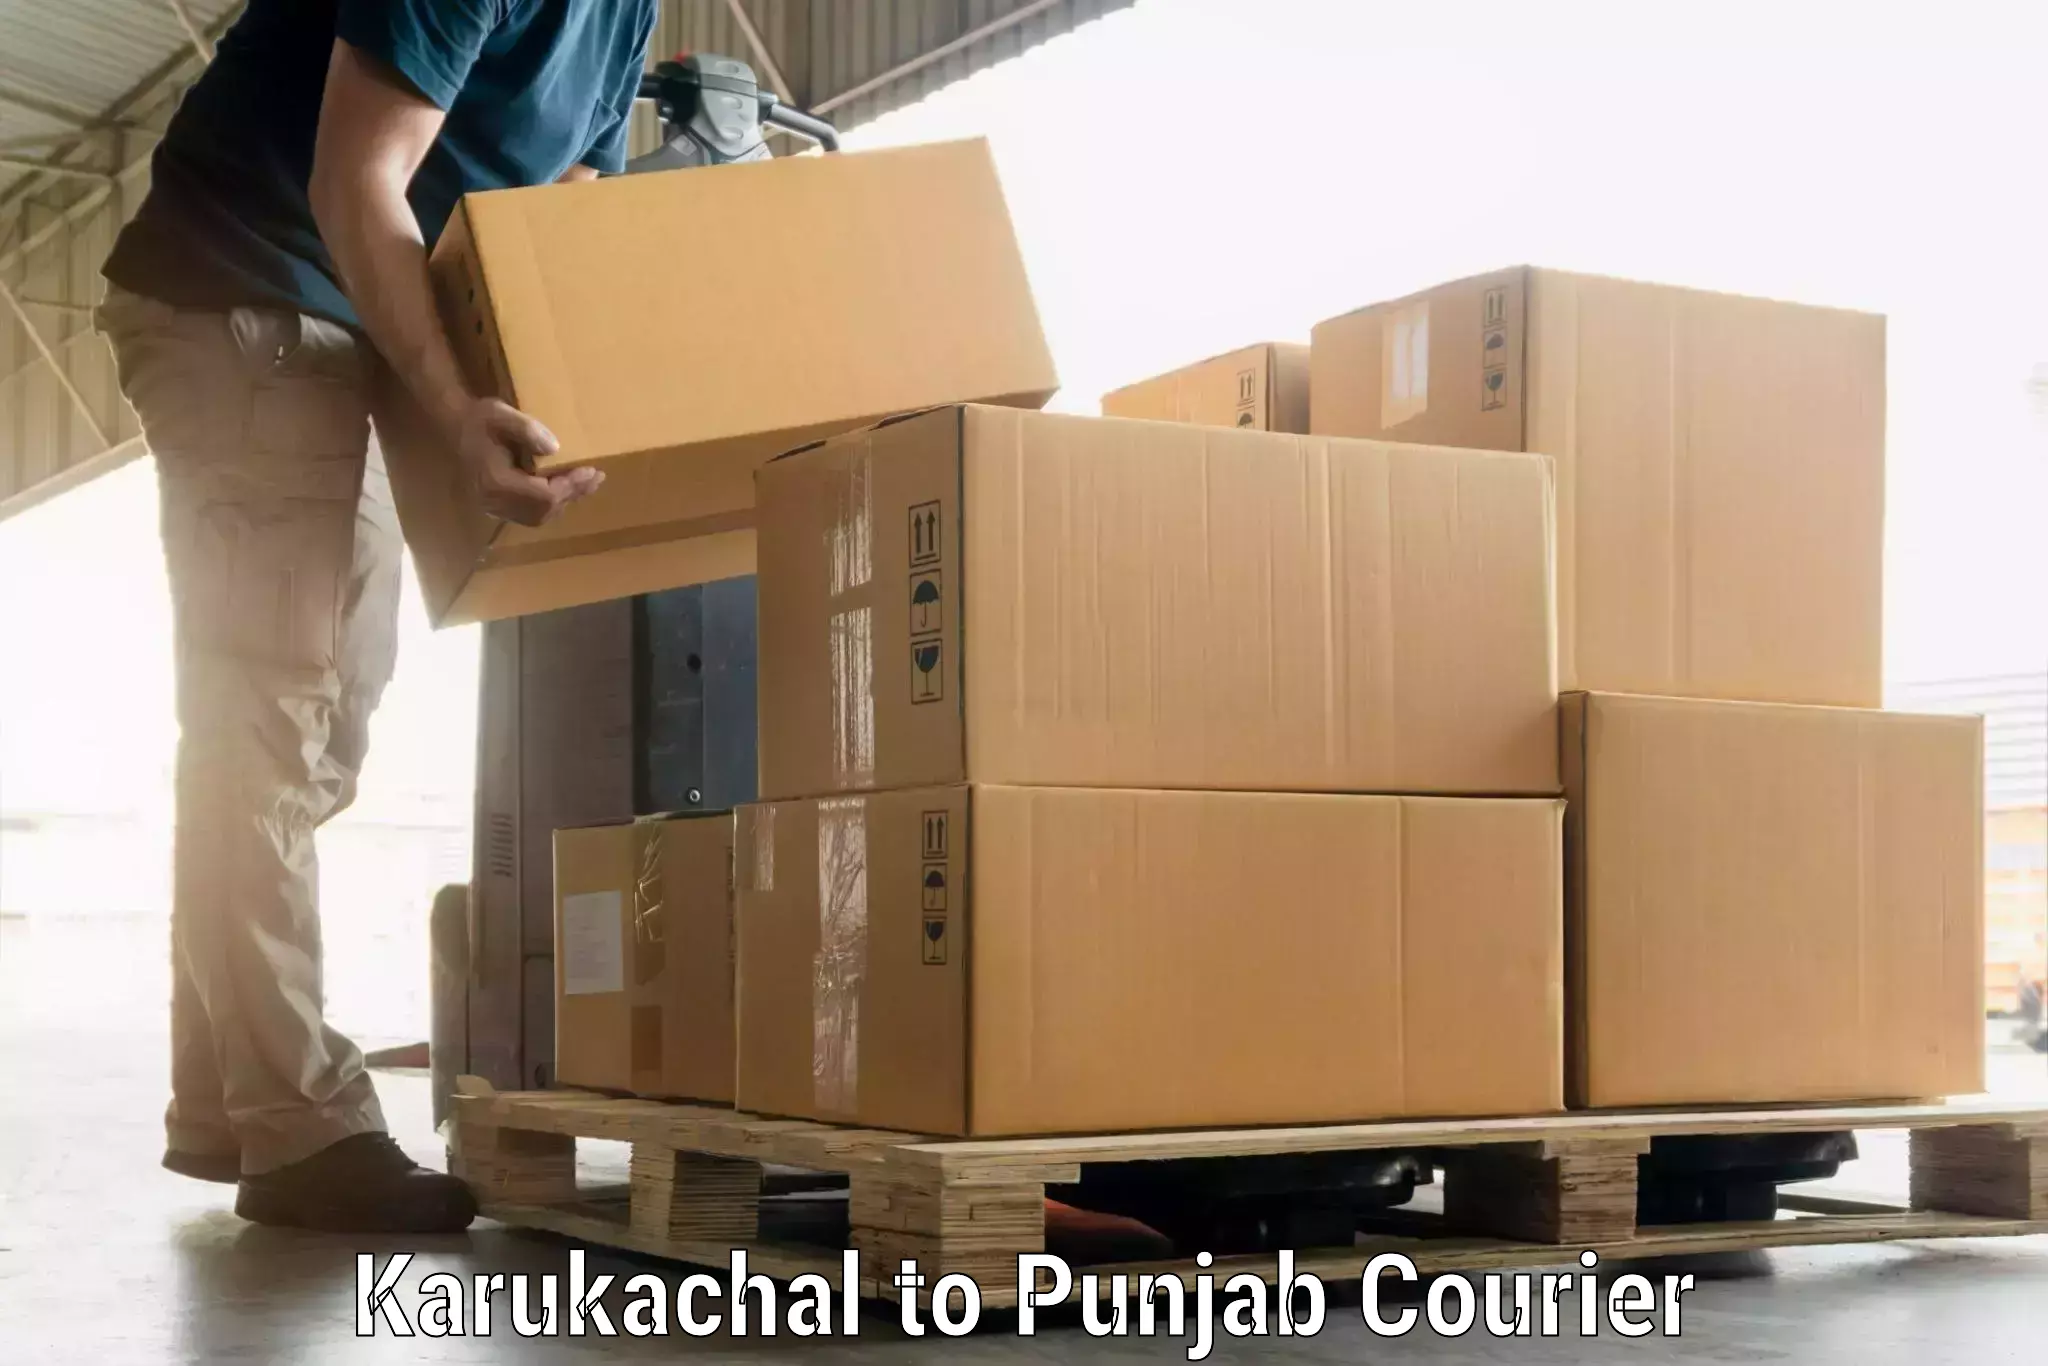 Multi-destination luggage transport Karukachal to Punjab